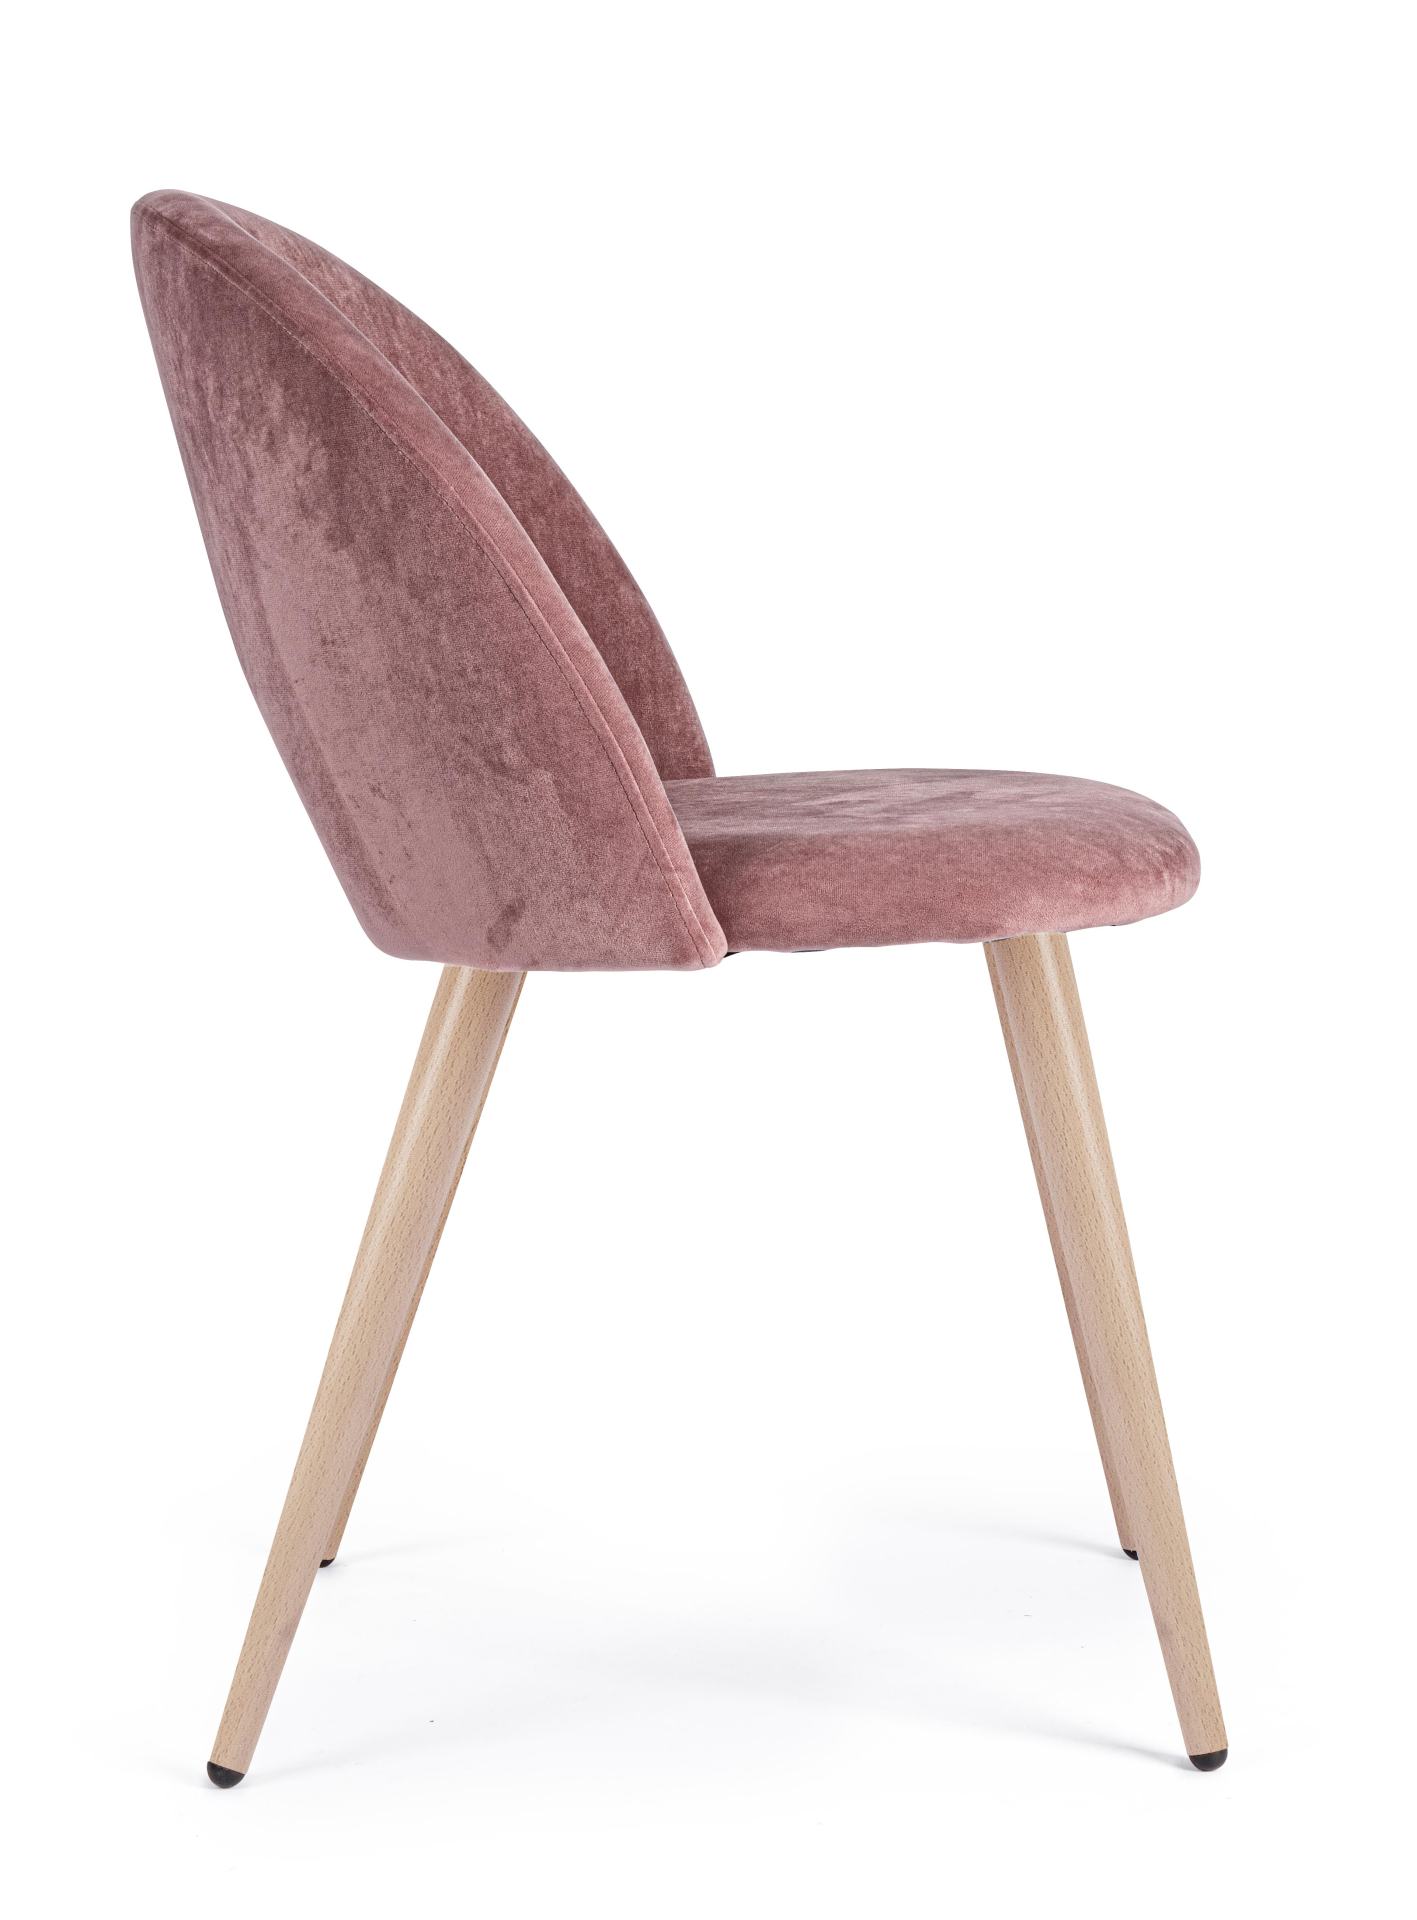 Der Esszimmerstuhl Linzey besitzt einen Samt-Bezug, welcher einen Rosa Farbton besitzt. Das Gestell ist aus Metall und hat eine Holz-Optik. Das Design des Stuhls ist modern. Die Sitzhöhe des Stuhls beträgt 46 cm.